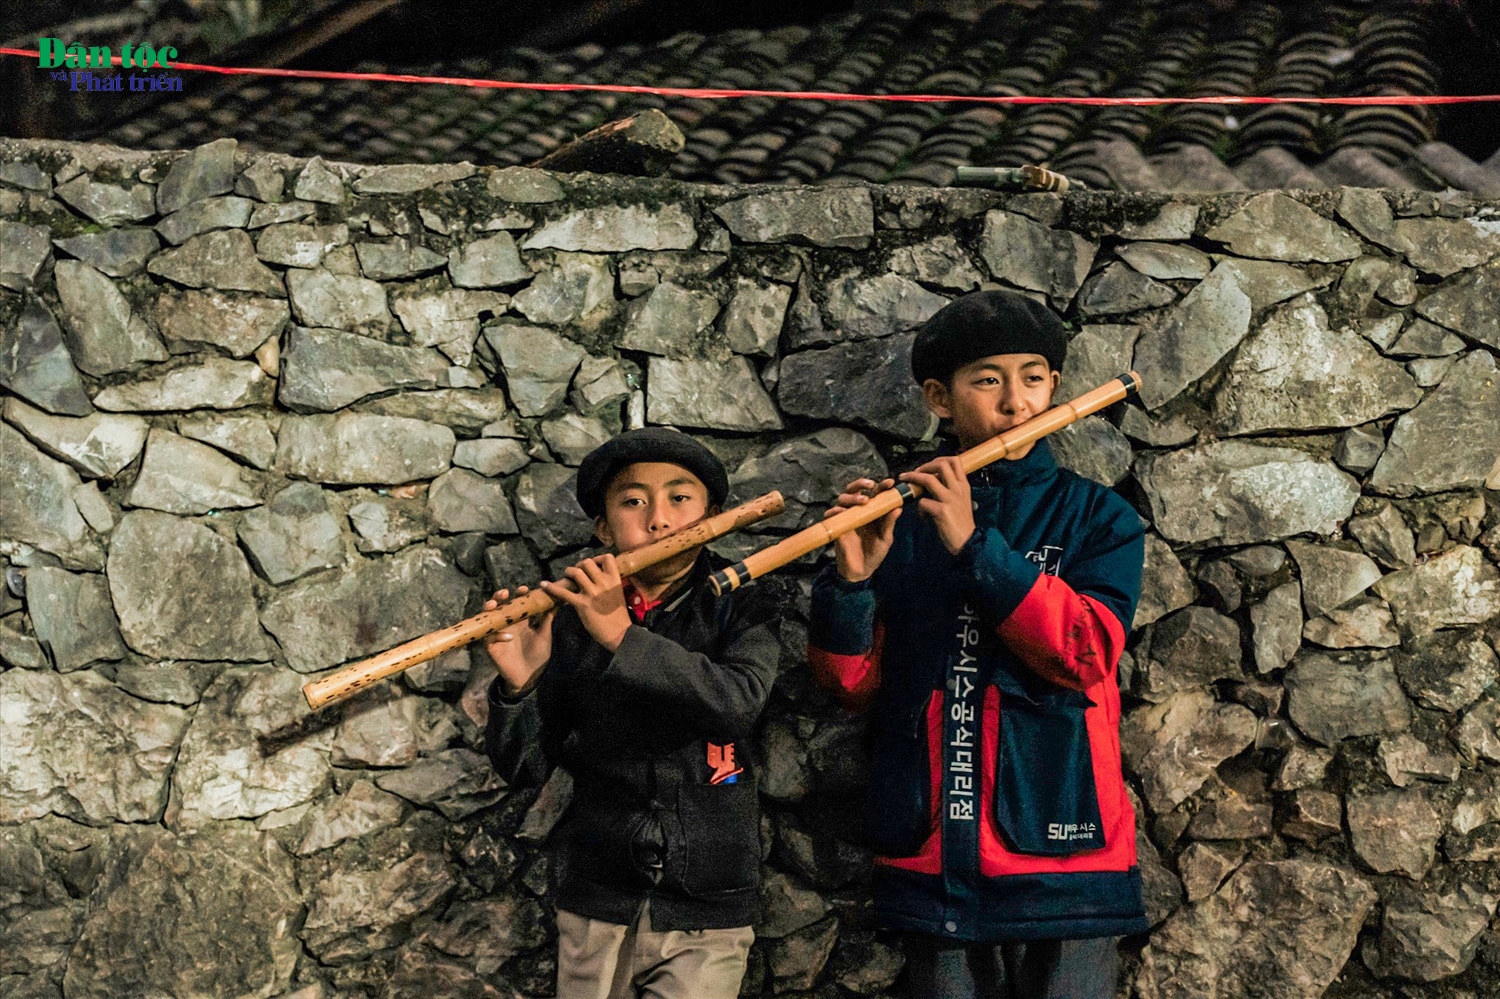 Sáo cũng là một nhạc cụ tiêu biểu của người Mông, nhiều cậu bé có thể sử dụng loại nhạc cụ này rất thành thạo